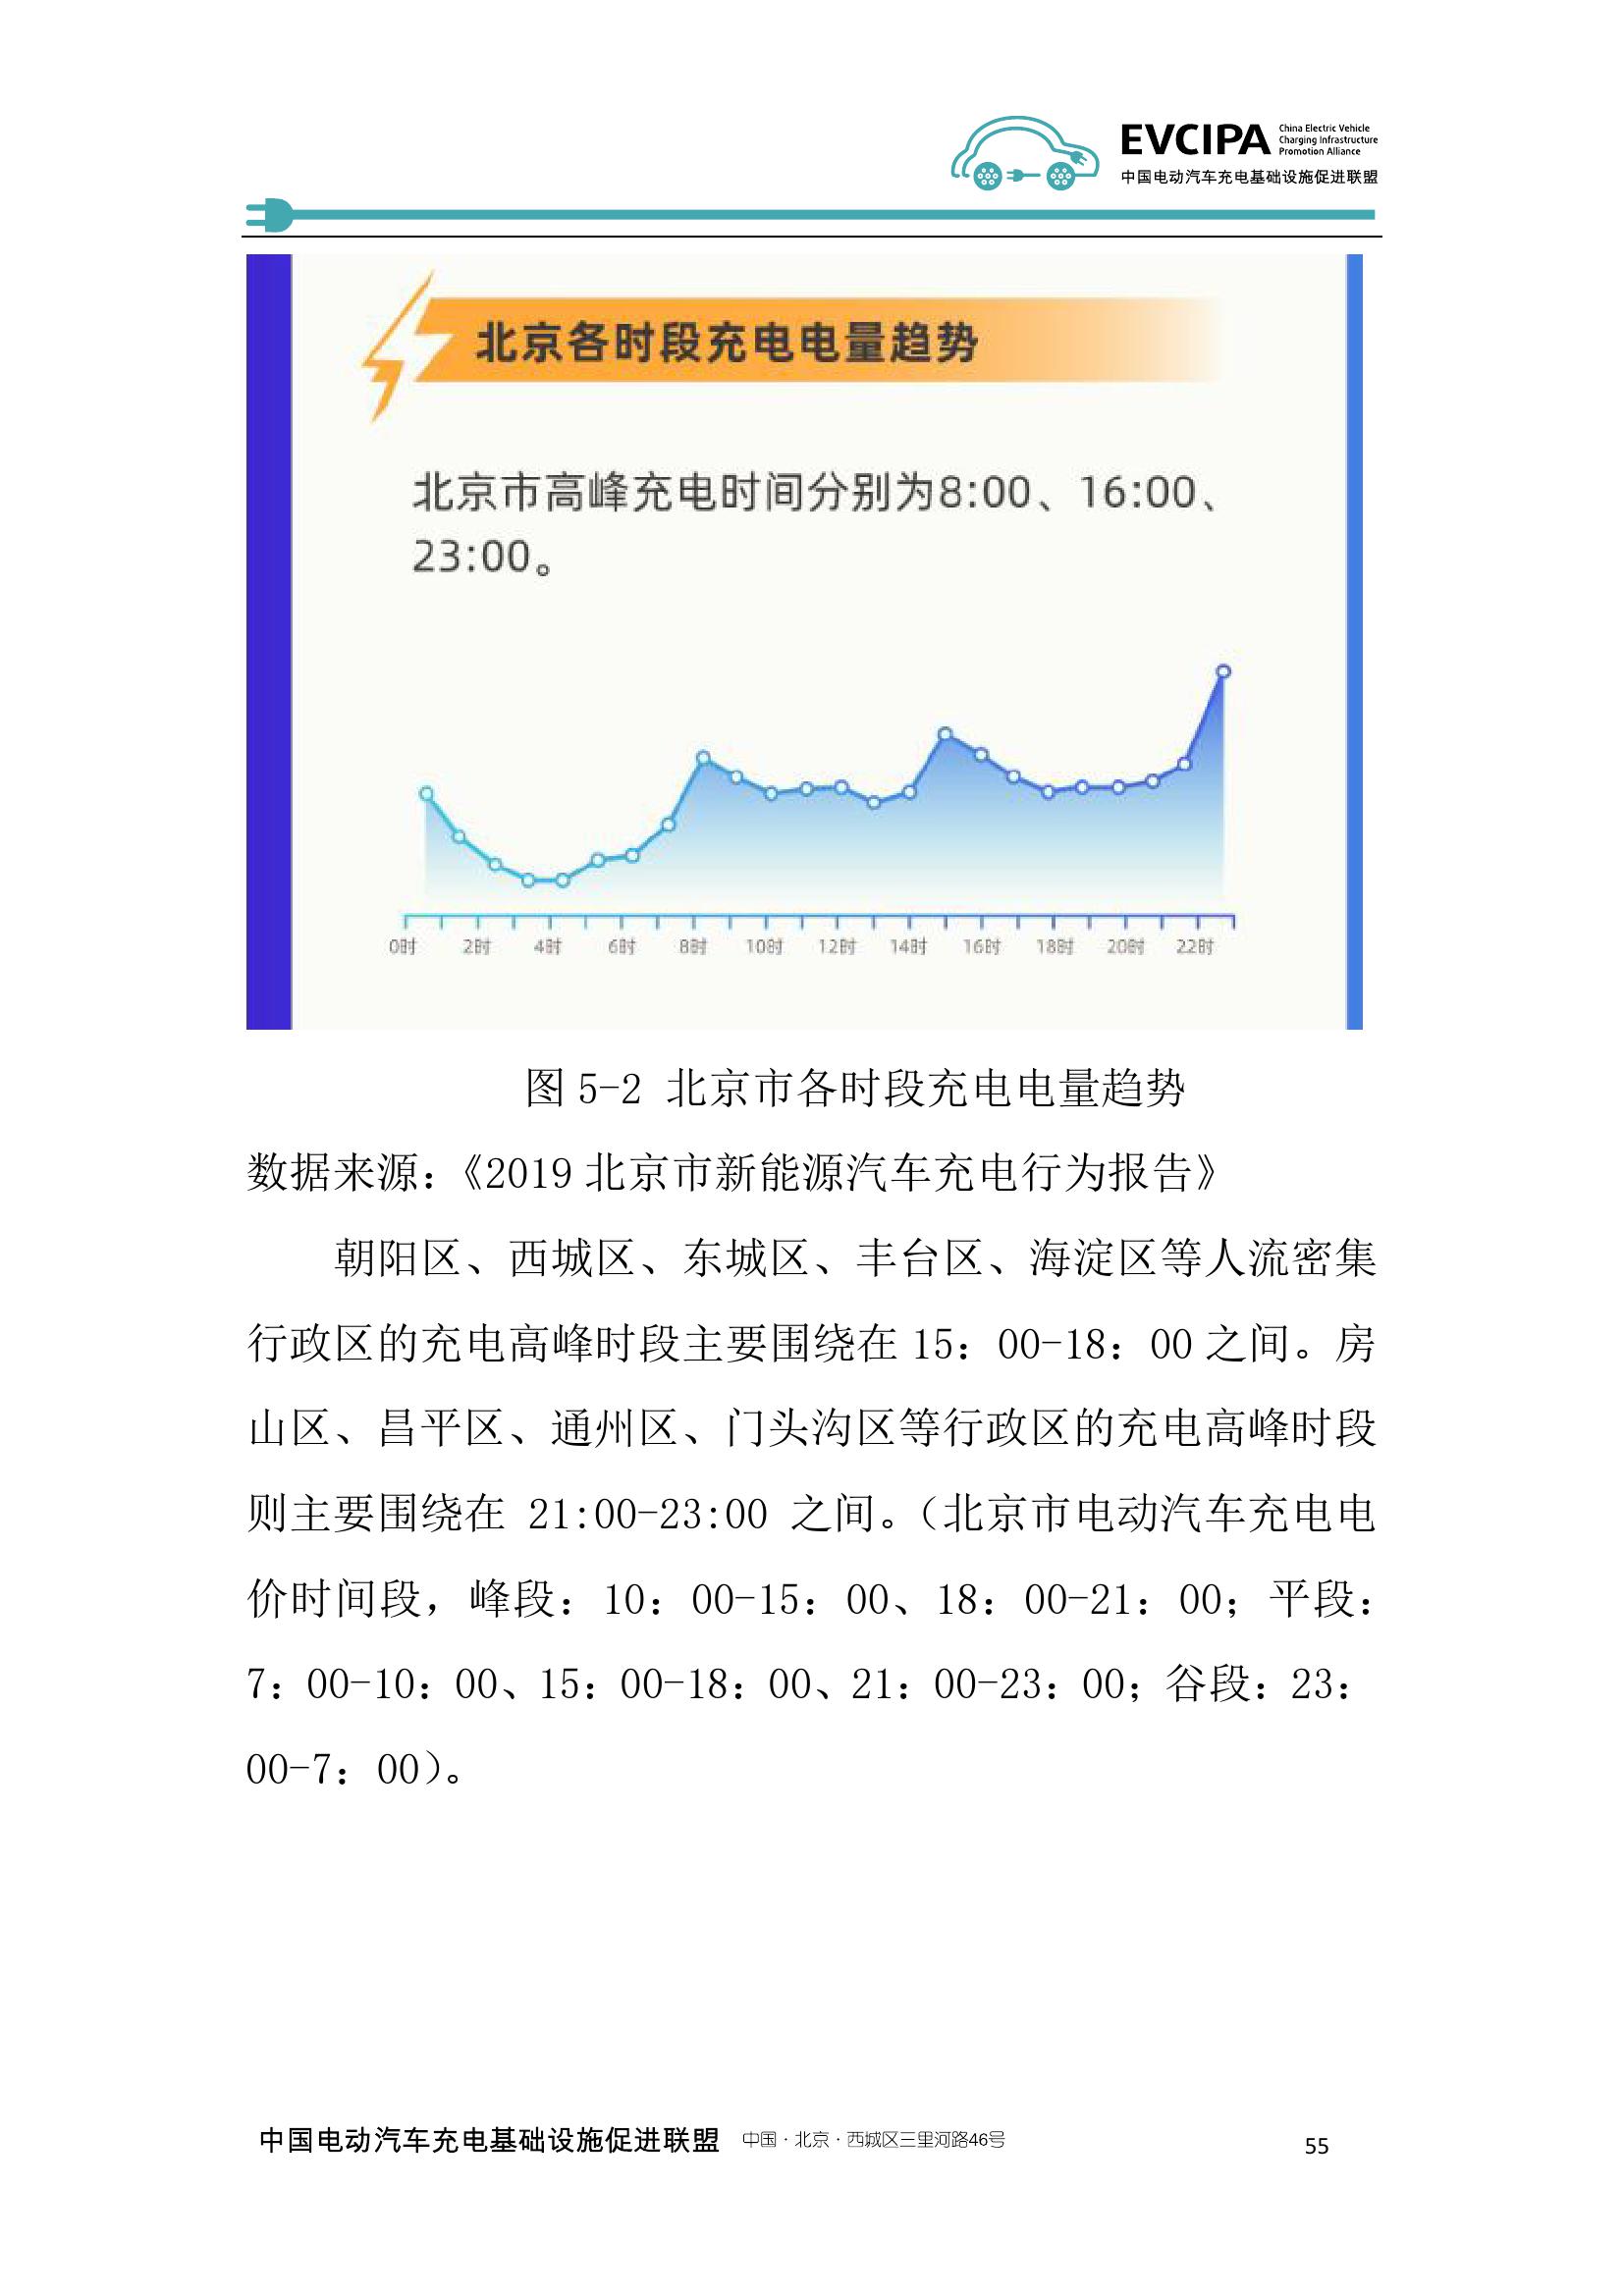 2019-2020年度中国充电基础设施发展报告_000063.jpg